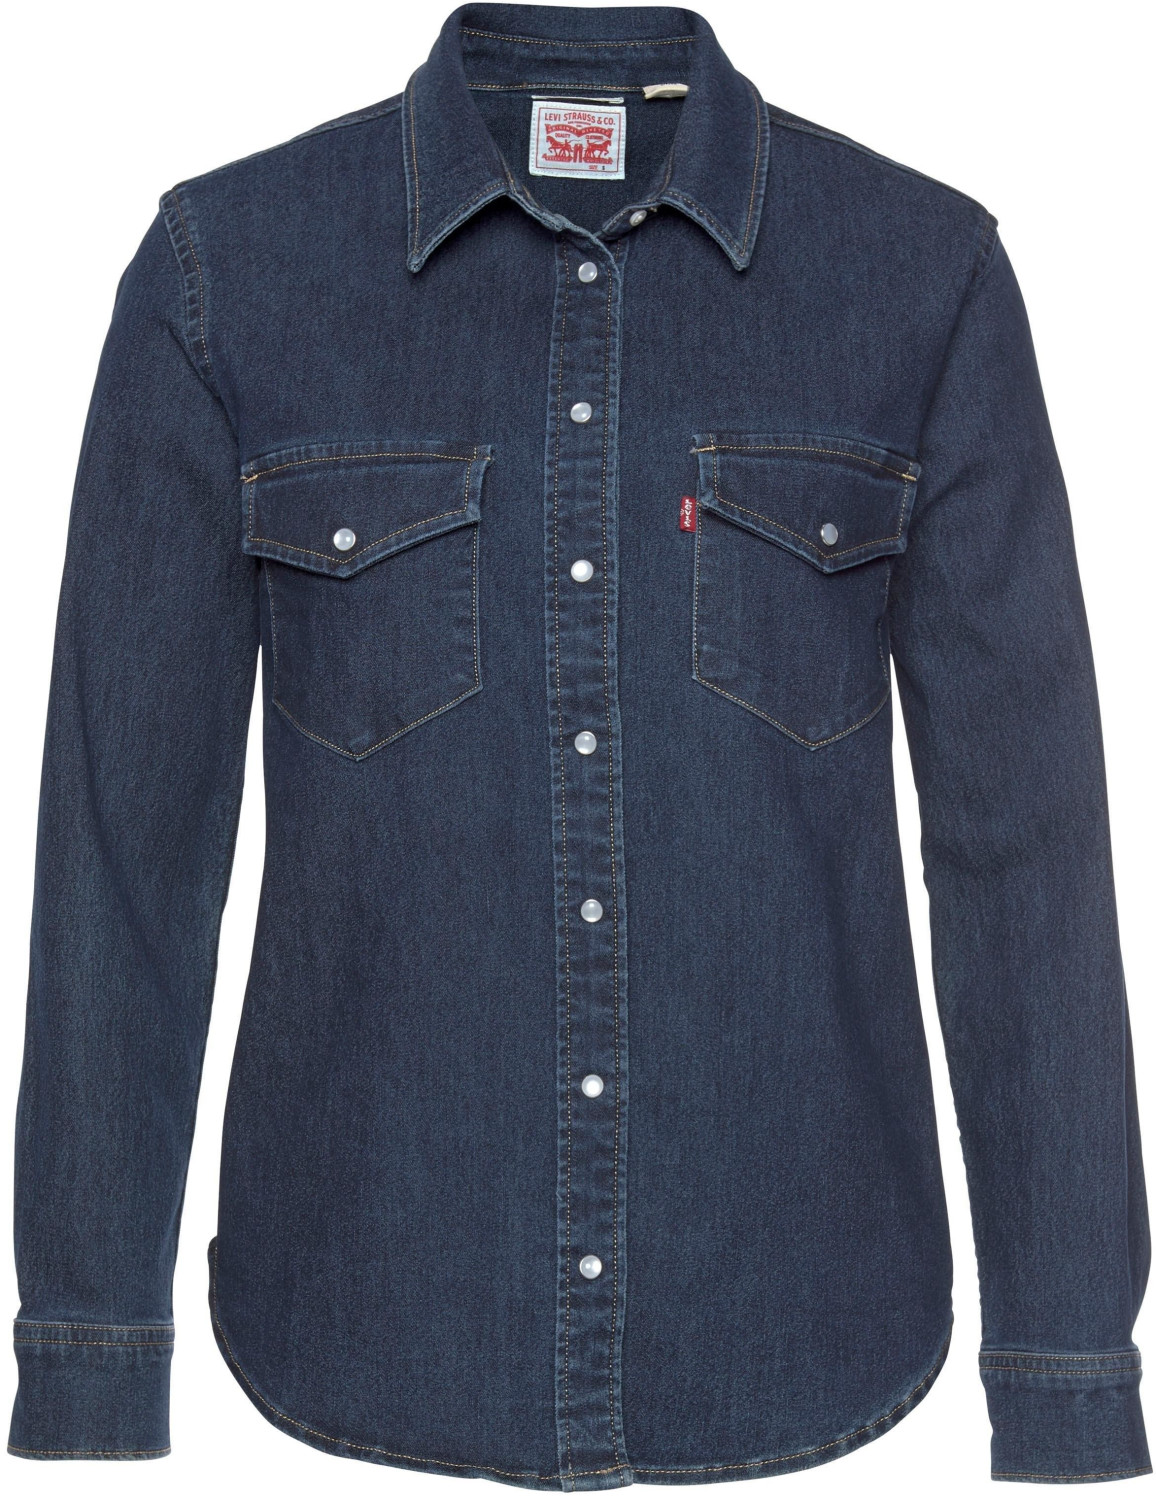 Levi's Essential Western Shirt blue denim ab 75,95 € | Preisvergleich